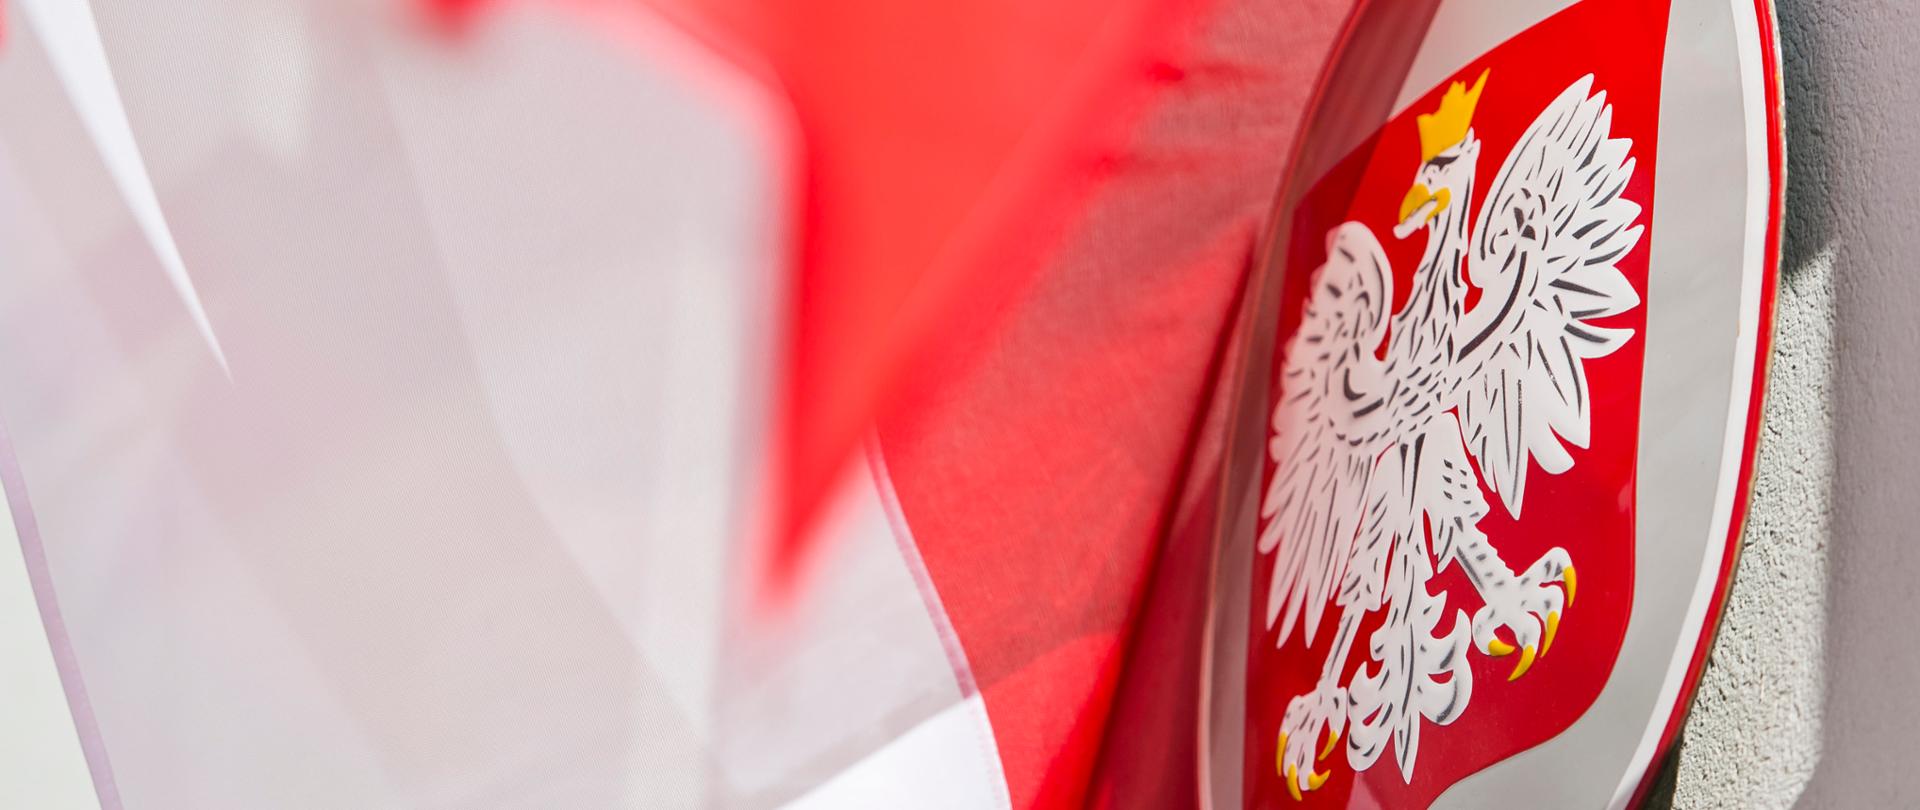 Zdjęcie przedstawiające Godło Rzeczypospolitej Polskiej, orła białego ze złotą koroną na głowie zwróconej w prawo oraz flagę biało-czerwoną